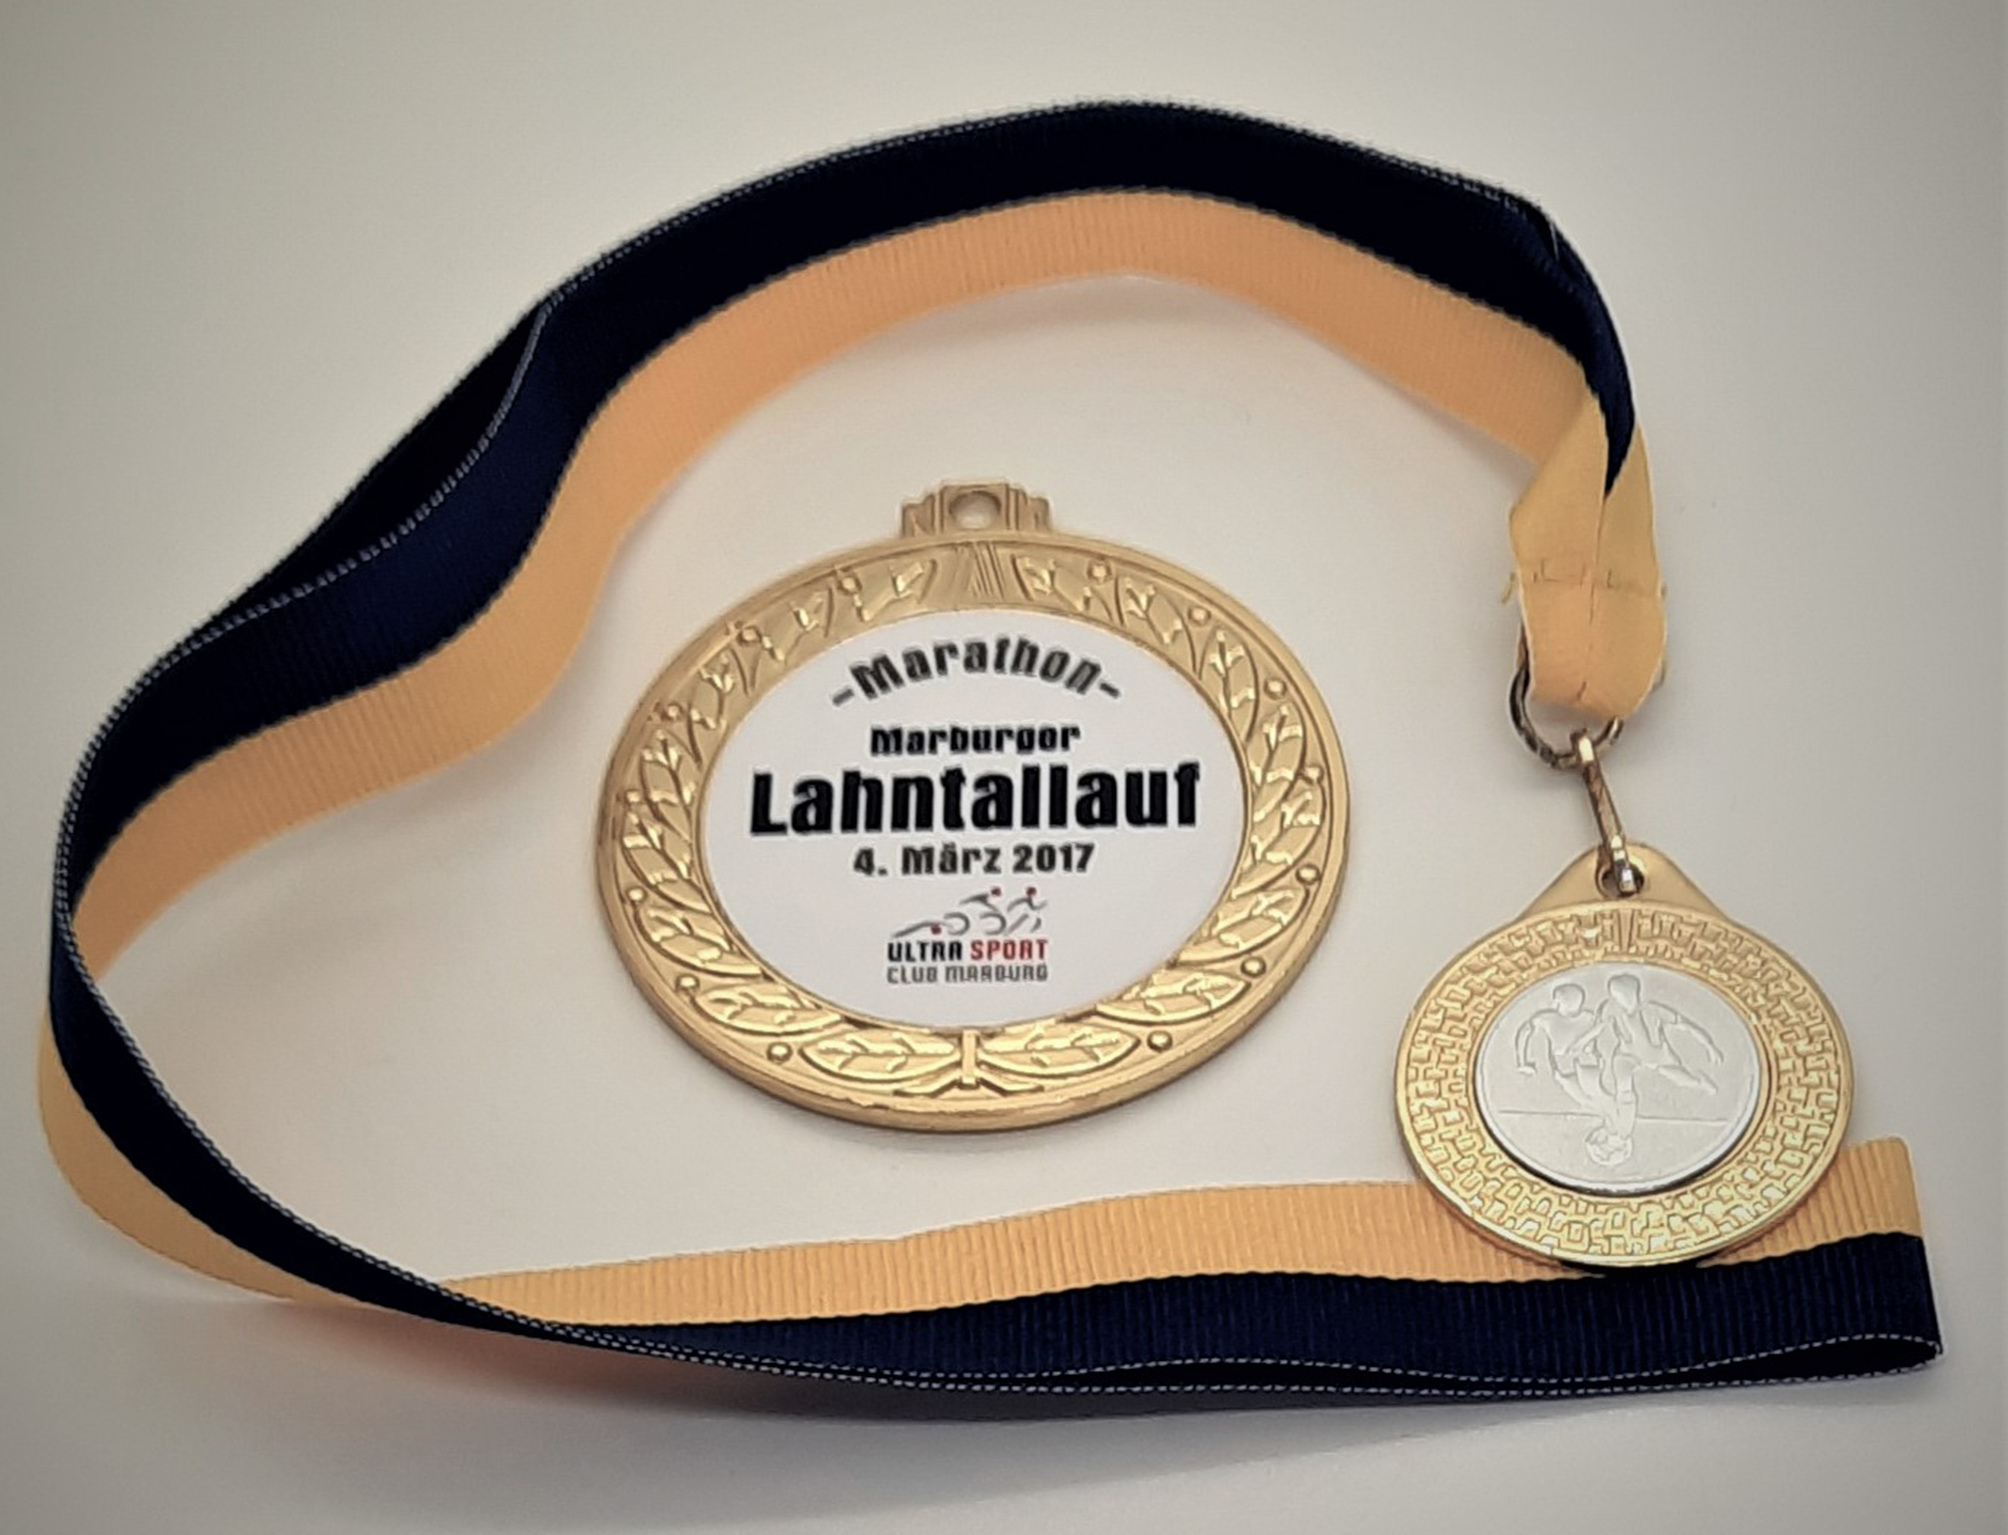 Medaille in gold mit Vereinslogo in weiß und schwarz-goldenem Band